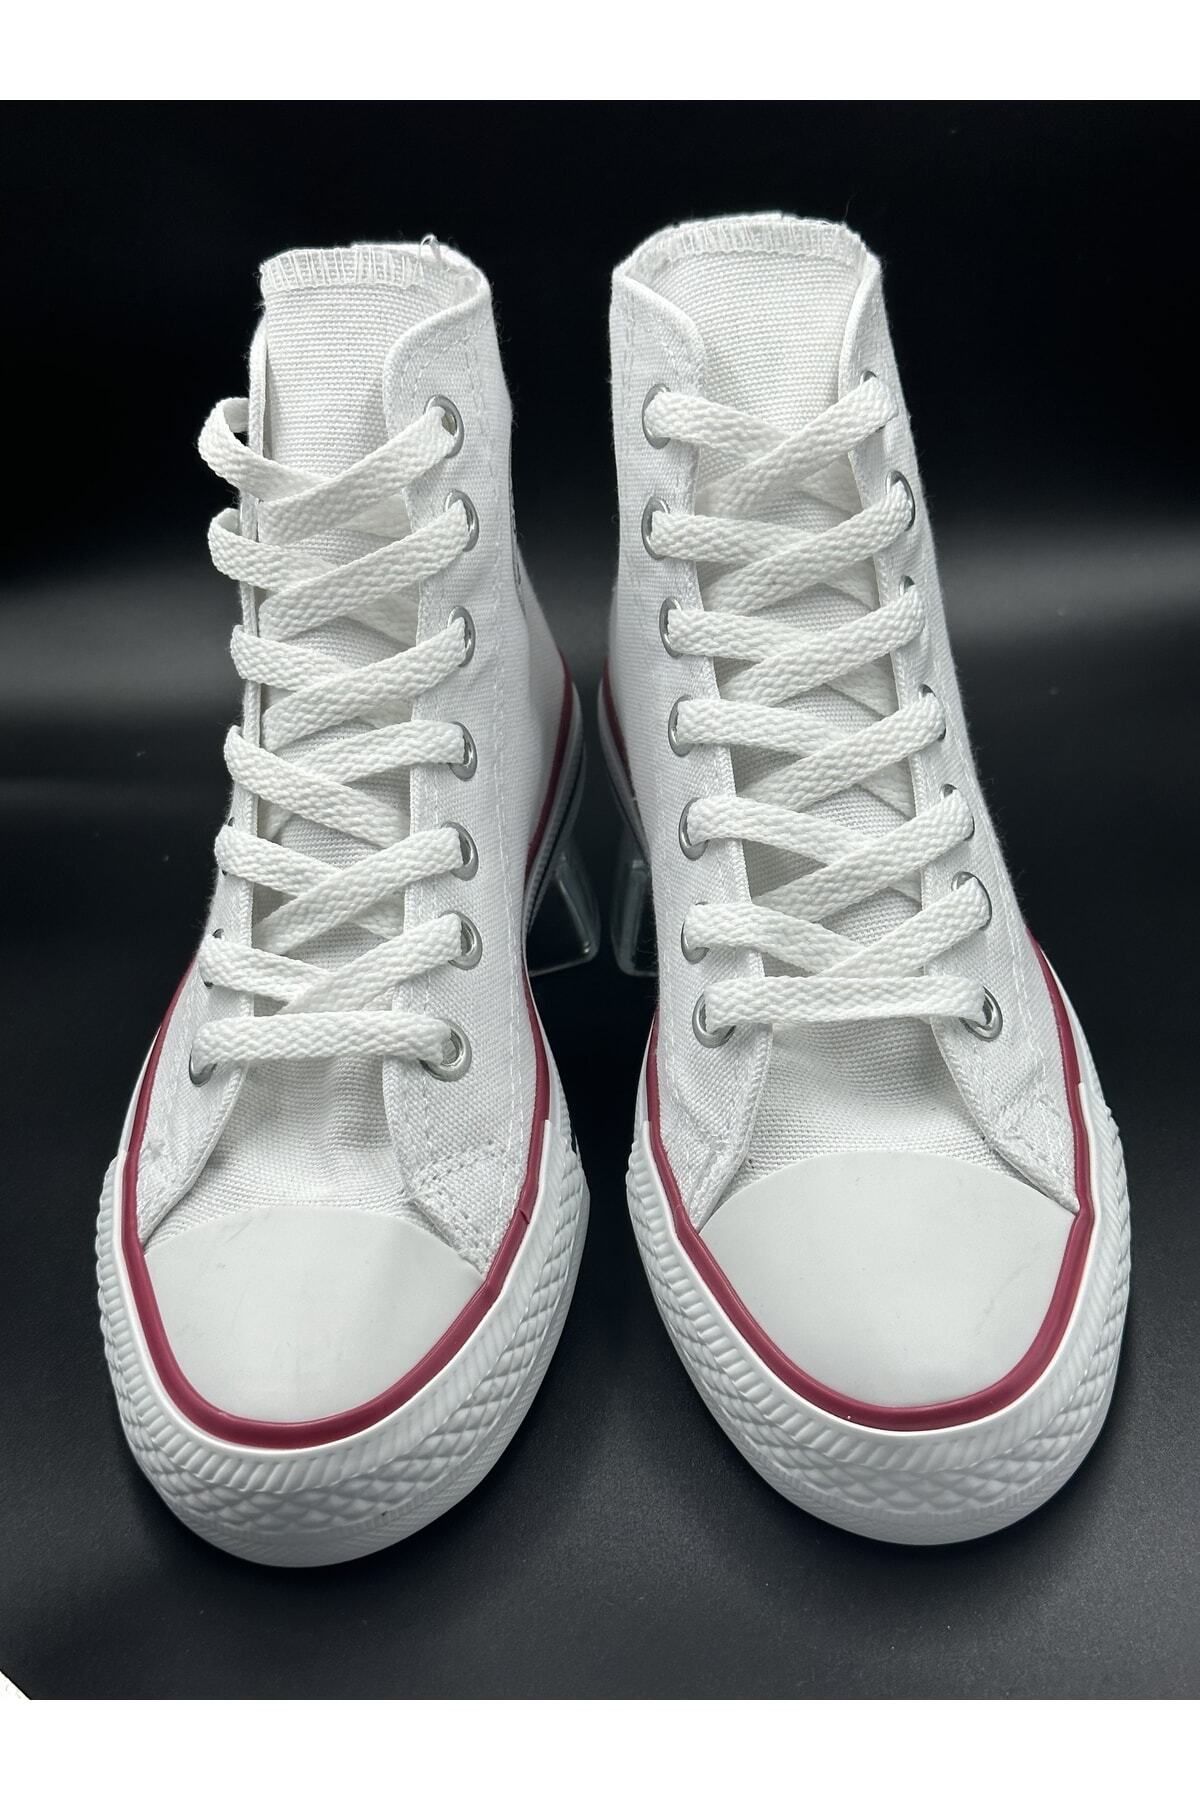 OUTLET Unisex Beyaz Bilekli Uzun Boğazlı Spor Ayakkabı - Sneaker